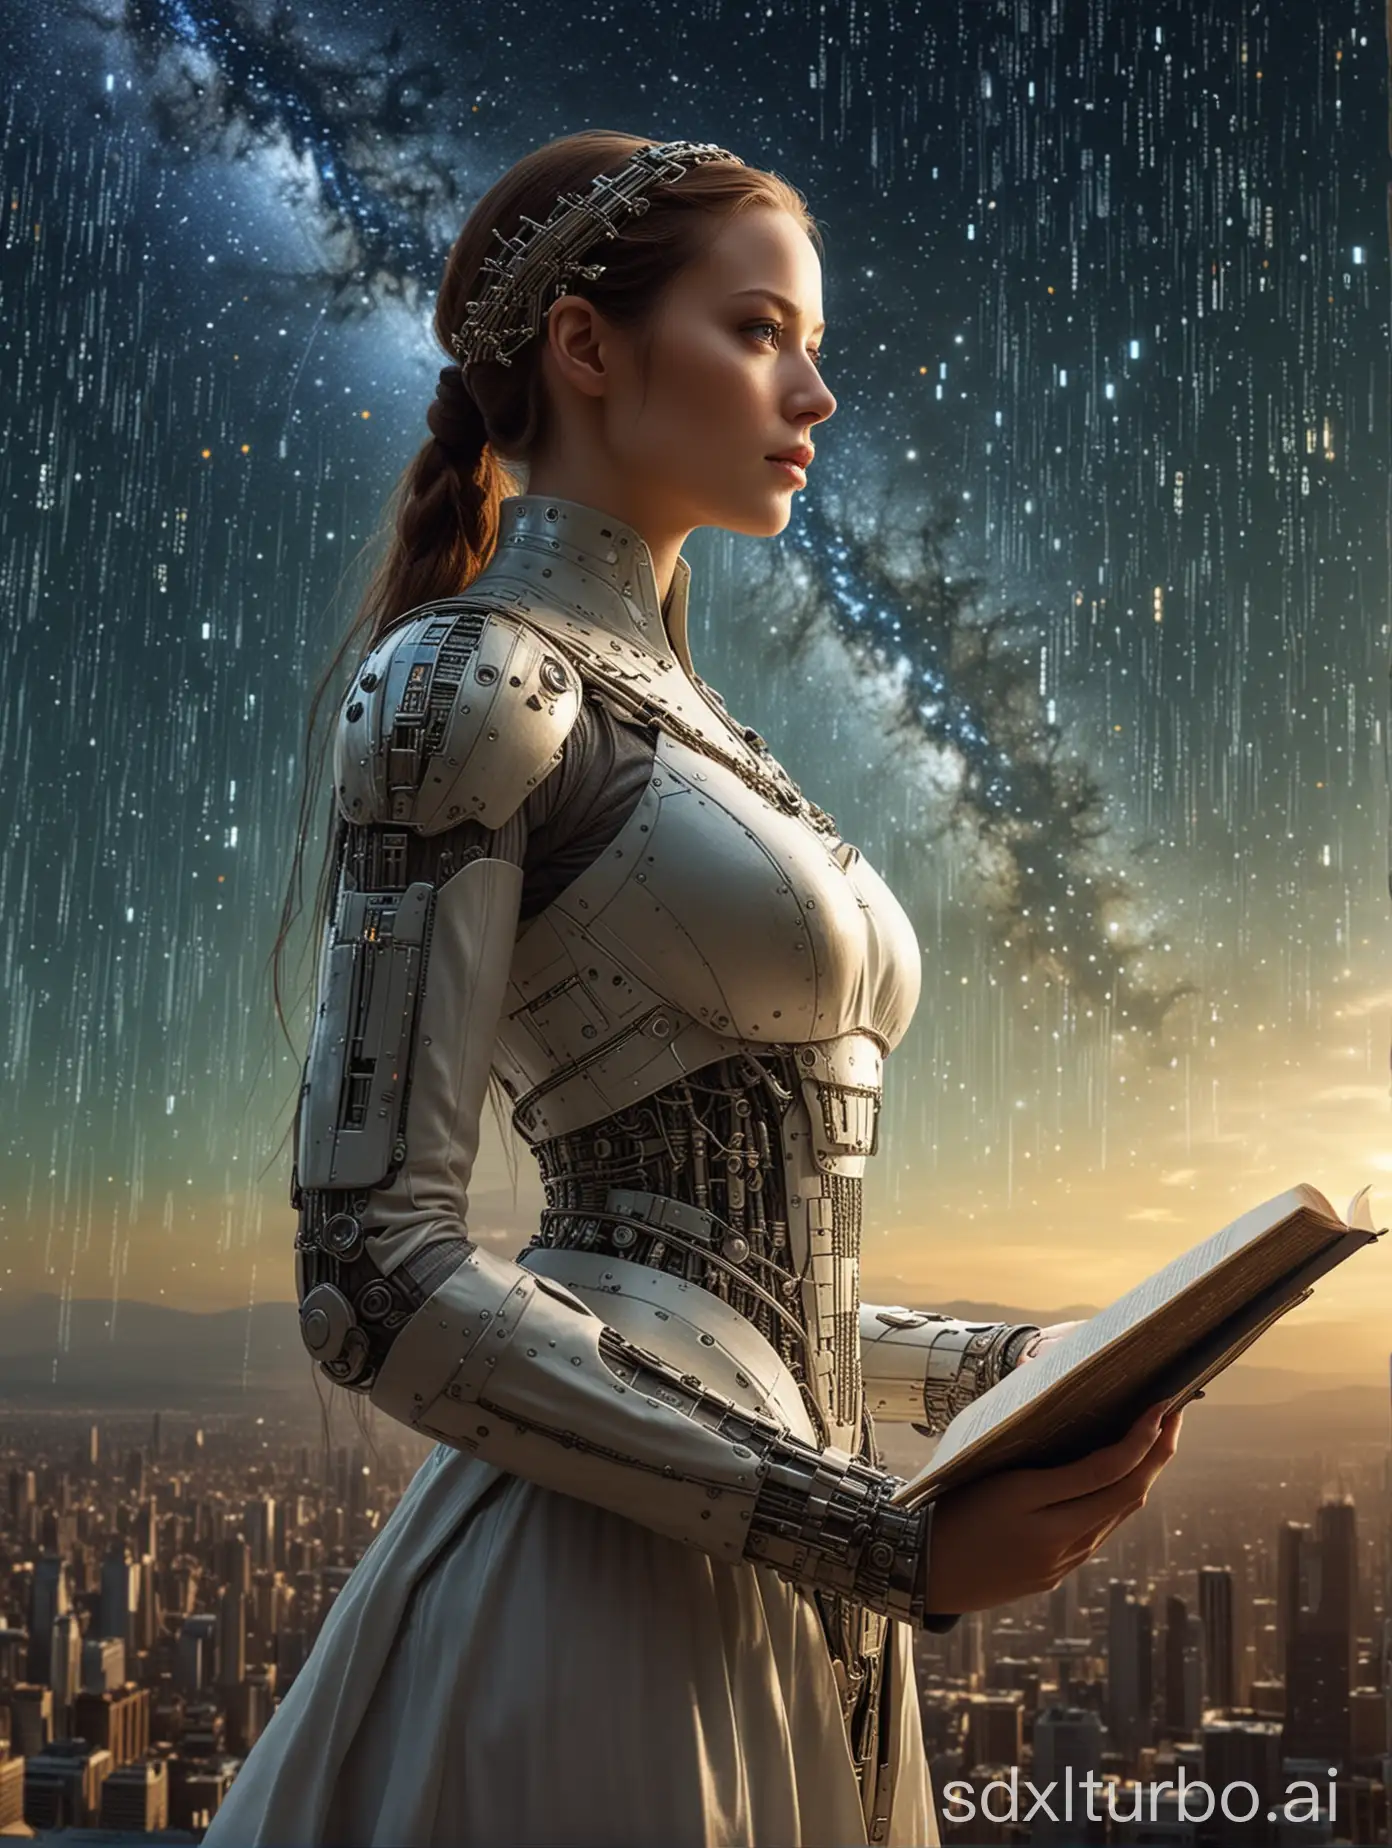 una bellissima donna androide del futuro guarda verso le stelle il cielo è composto da numeri binari come in matrix e guarda il suo sogno realizzarsi,  legge un libro antico del 1400